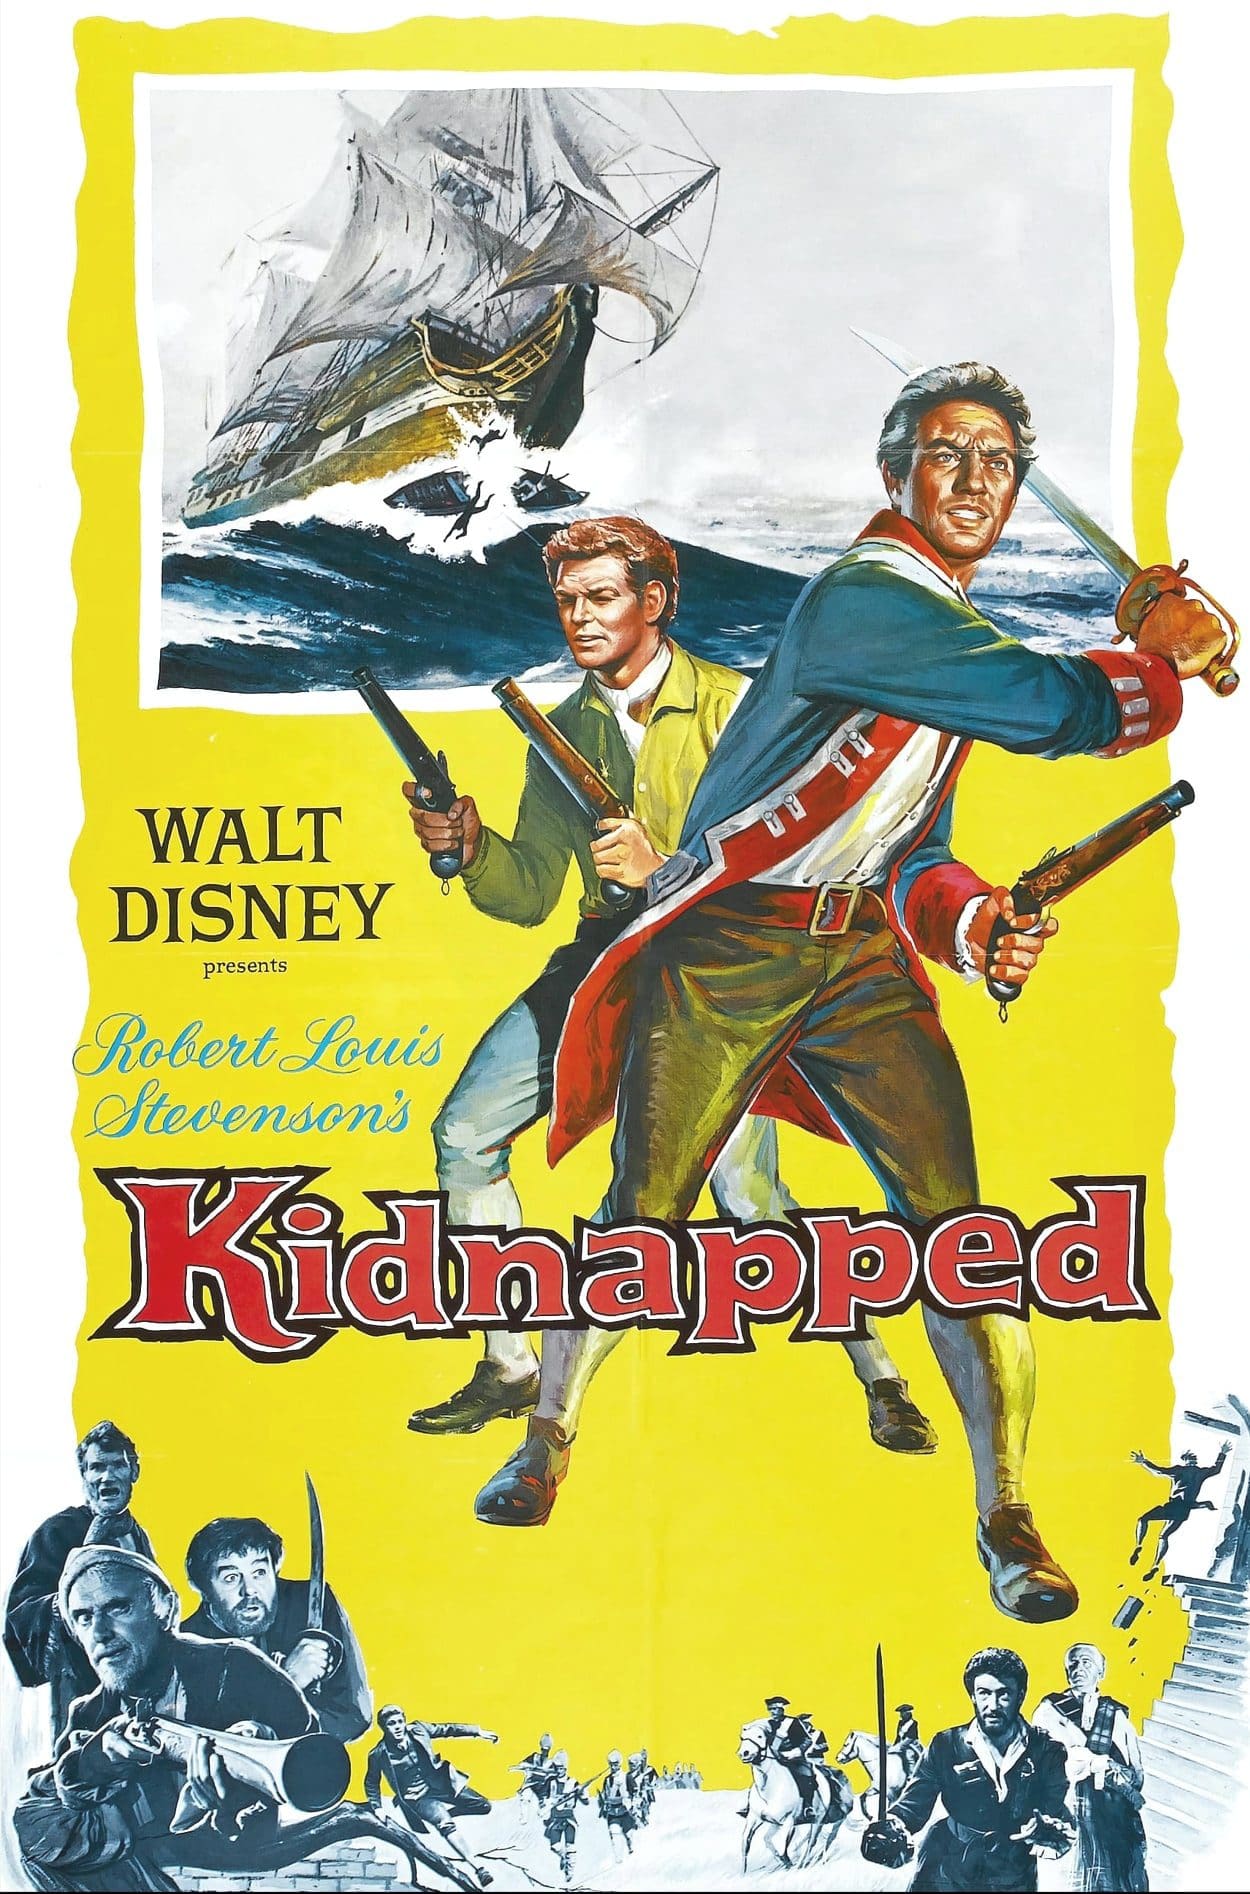 Με την ταινία “Kidnapped (Ο ξιφομάχος των 5 ηπείρων)” αρχίζουν οι φετινές προβολές ταινιών της Βιβλιοθήκης σήμερα Δευτέρα 11 Ιουλίου στις 9.15 μ.μ.